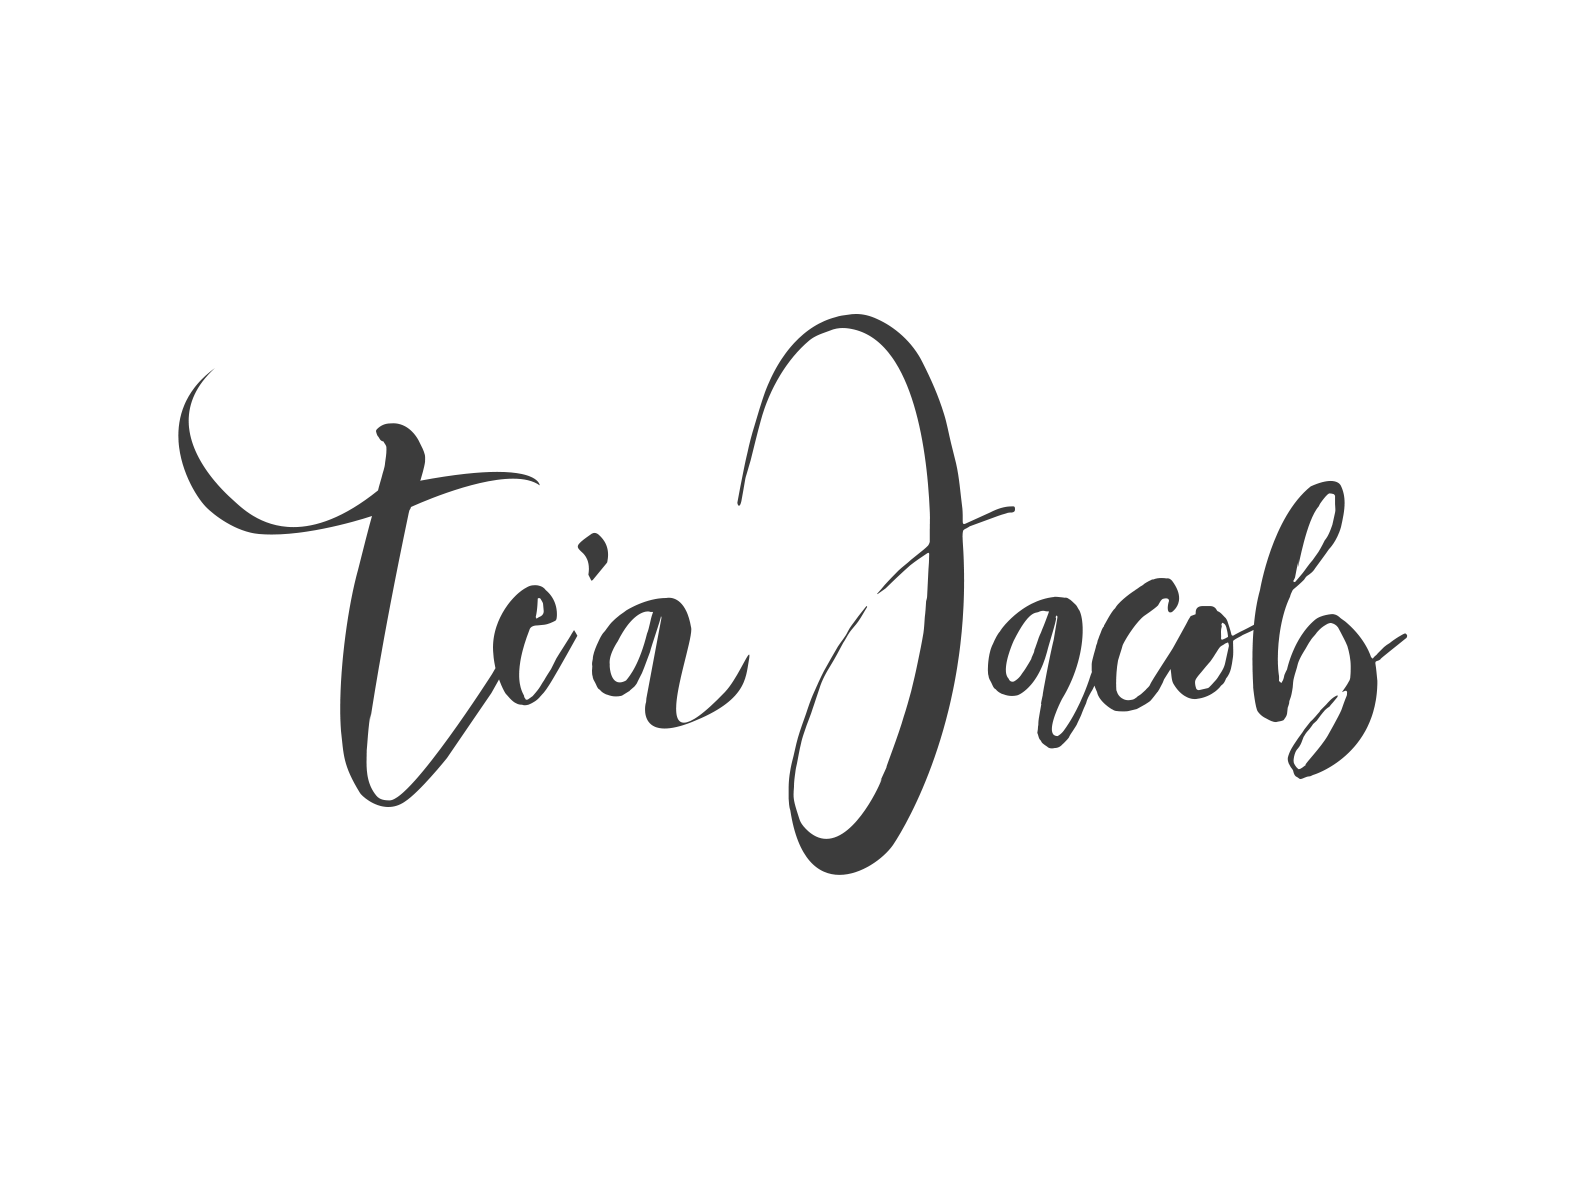 Tea Jacob